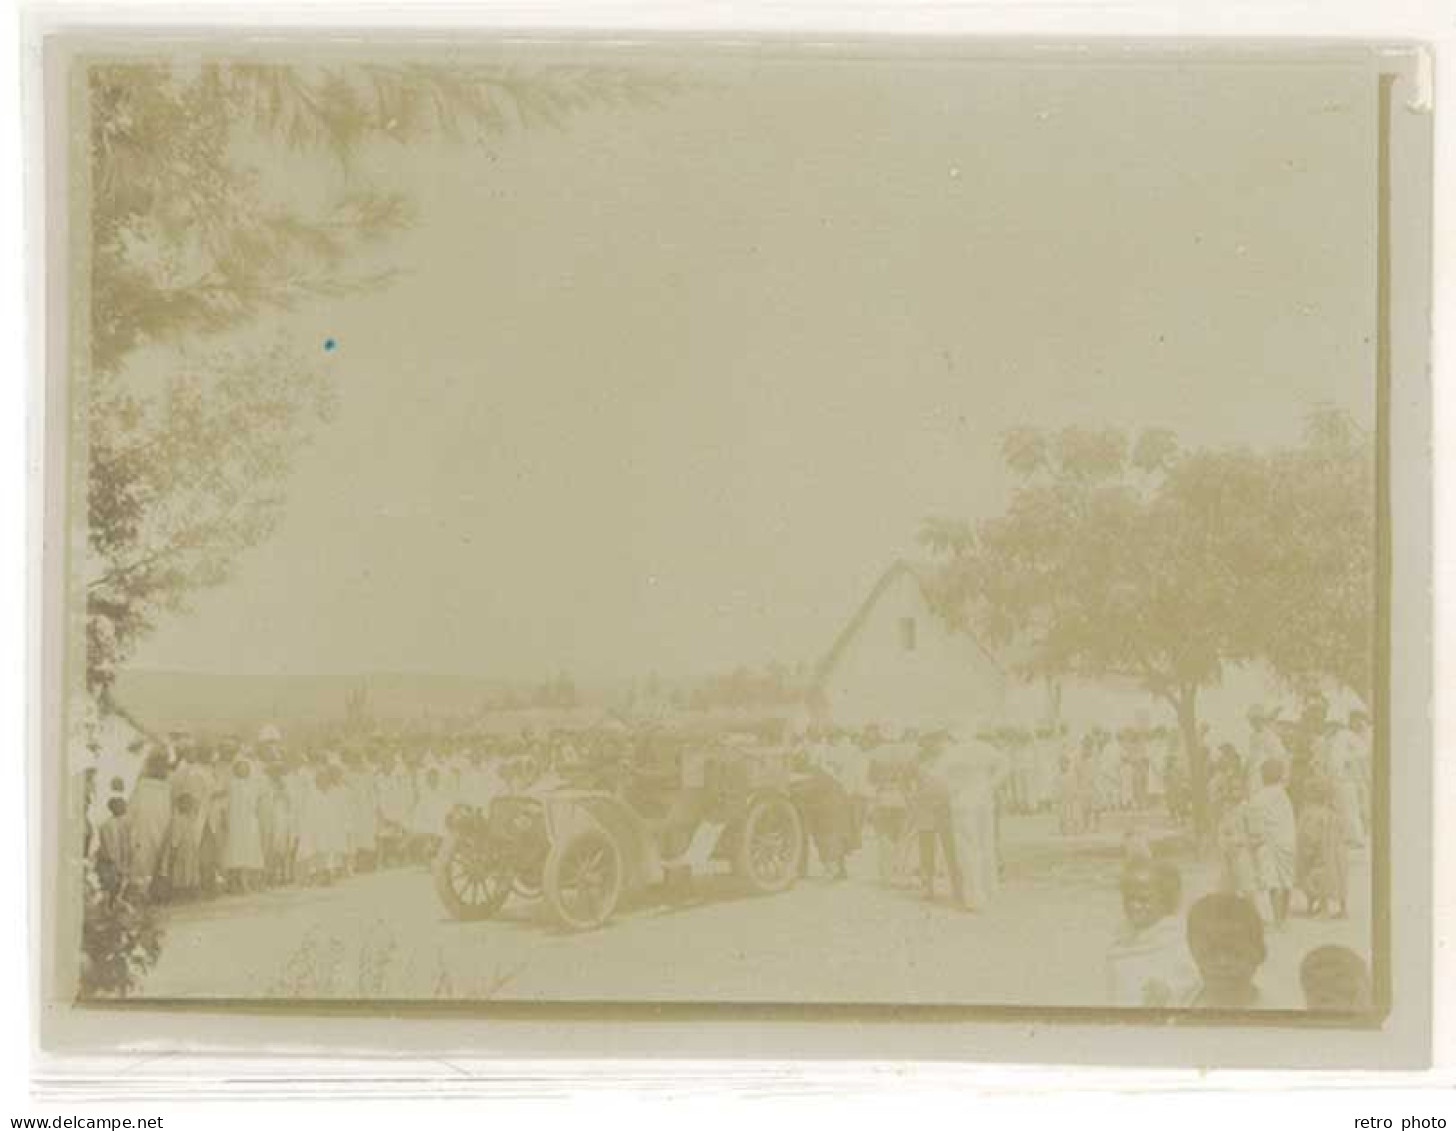 Photo Madagascar Ambatolampy 1907, Automobile & Population - Places